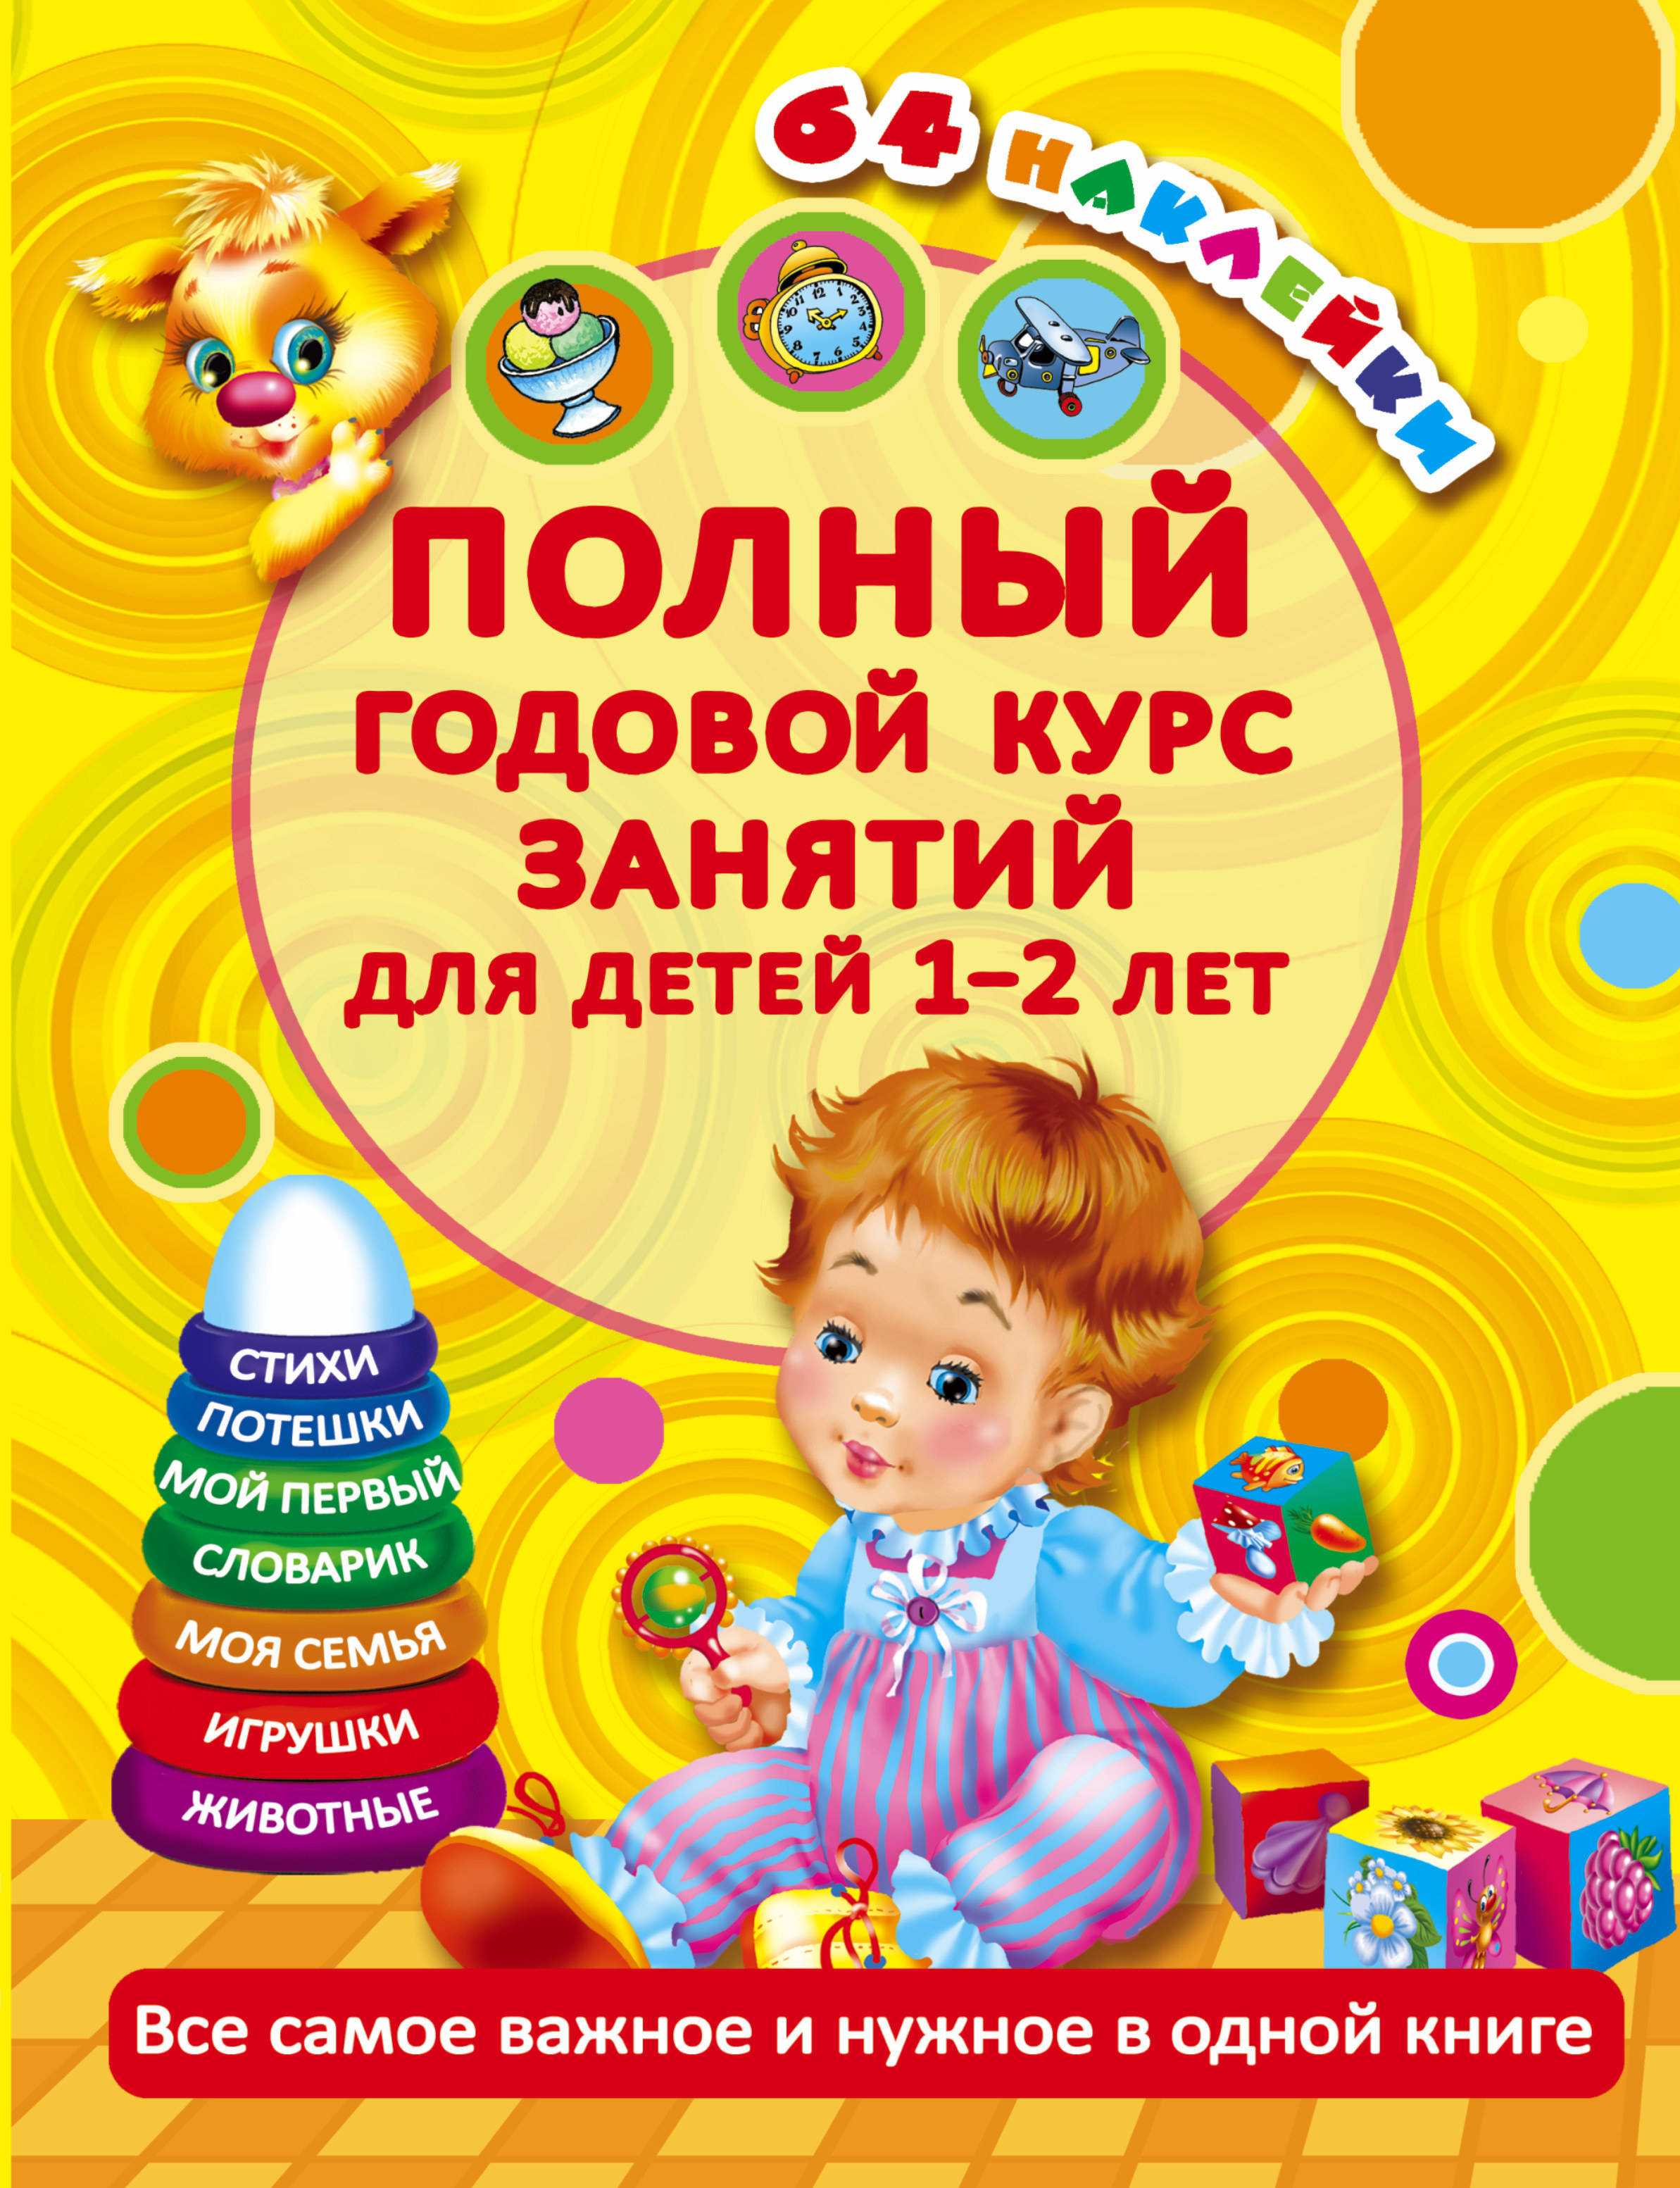 Развивающие книги для детей 1 — 2 года